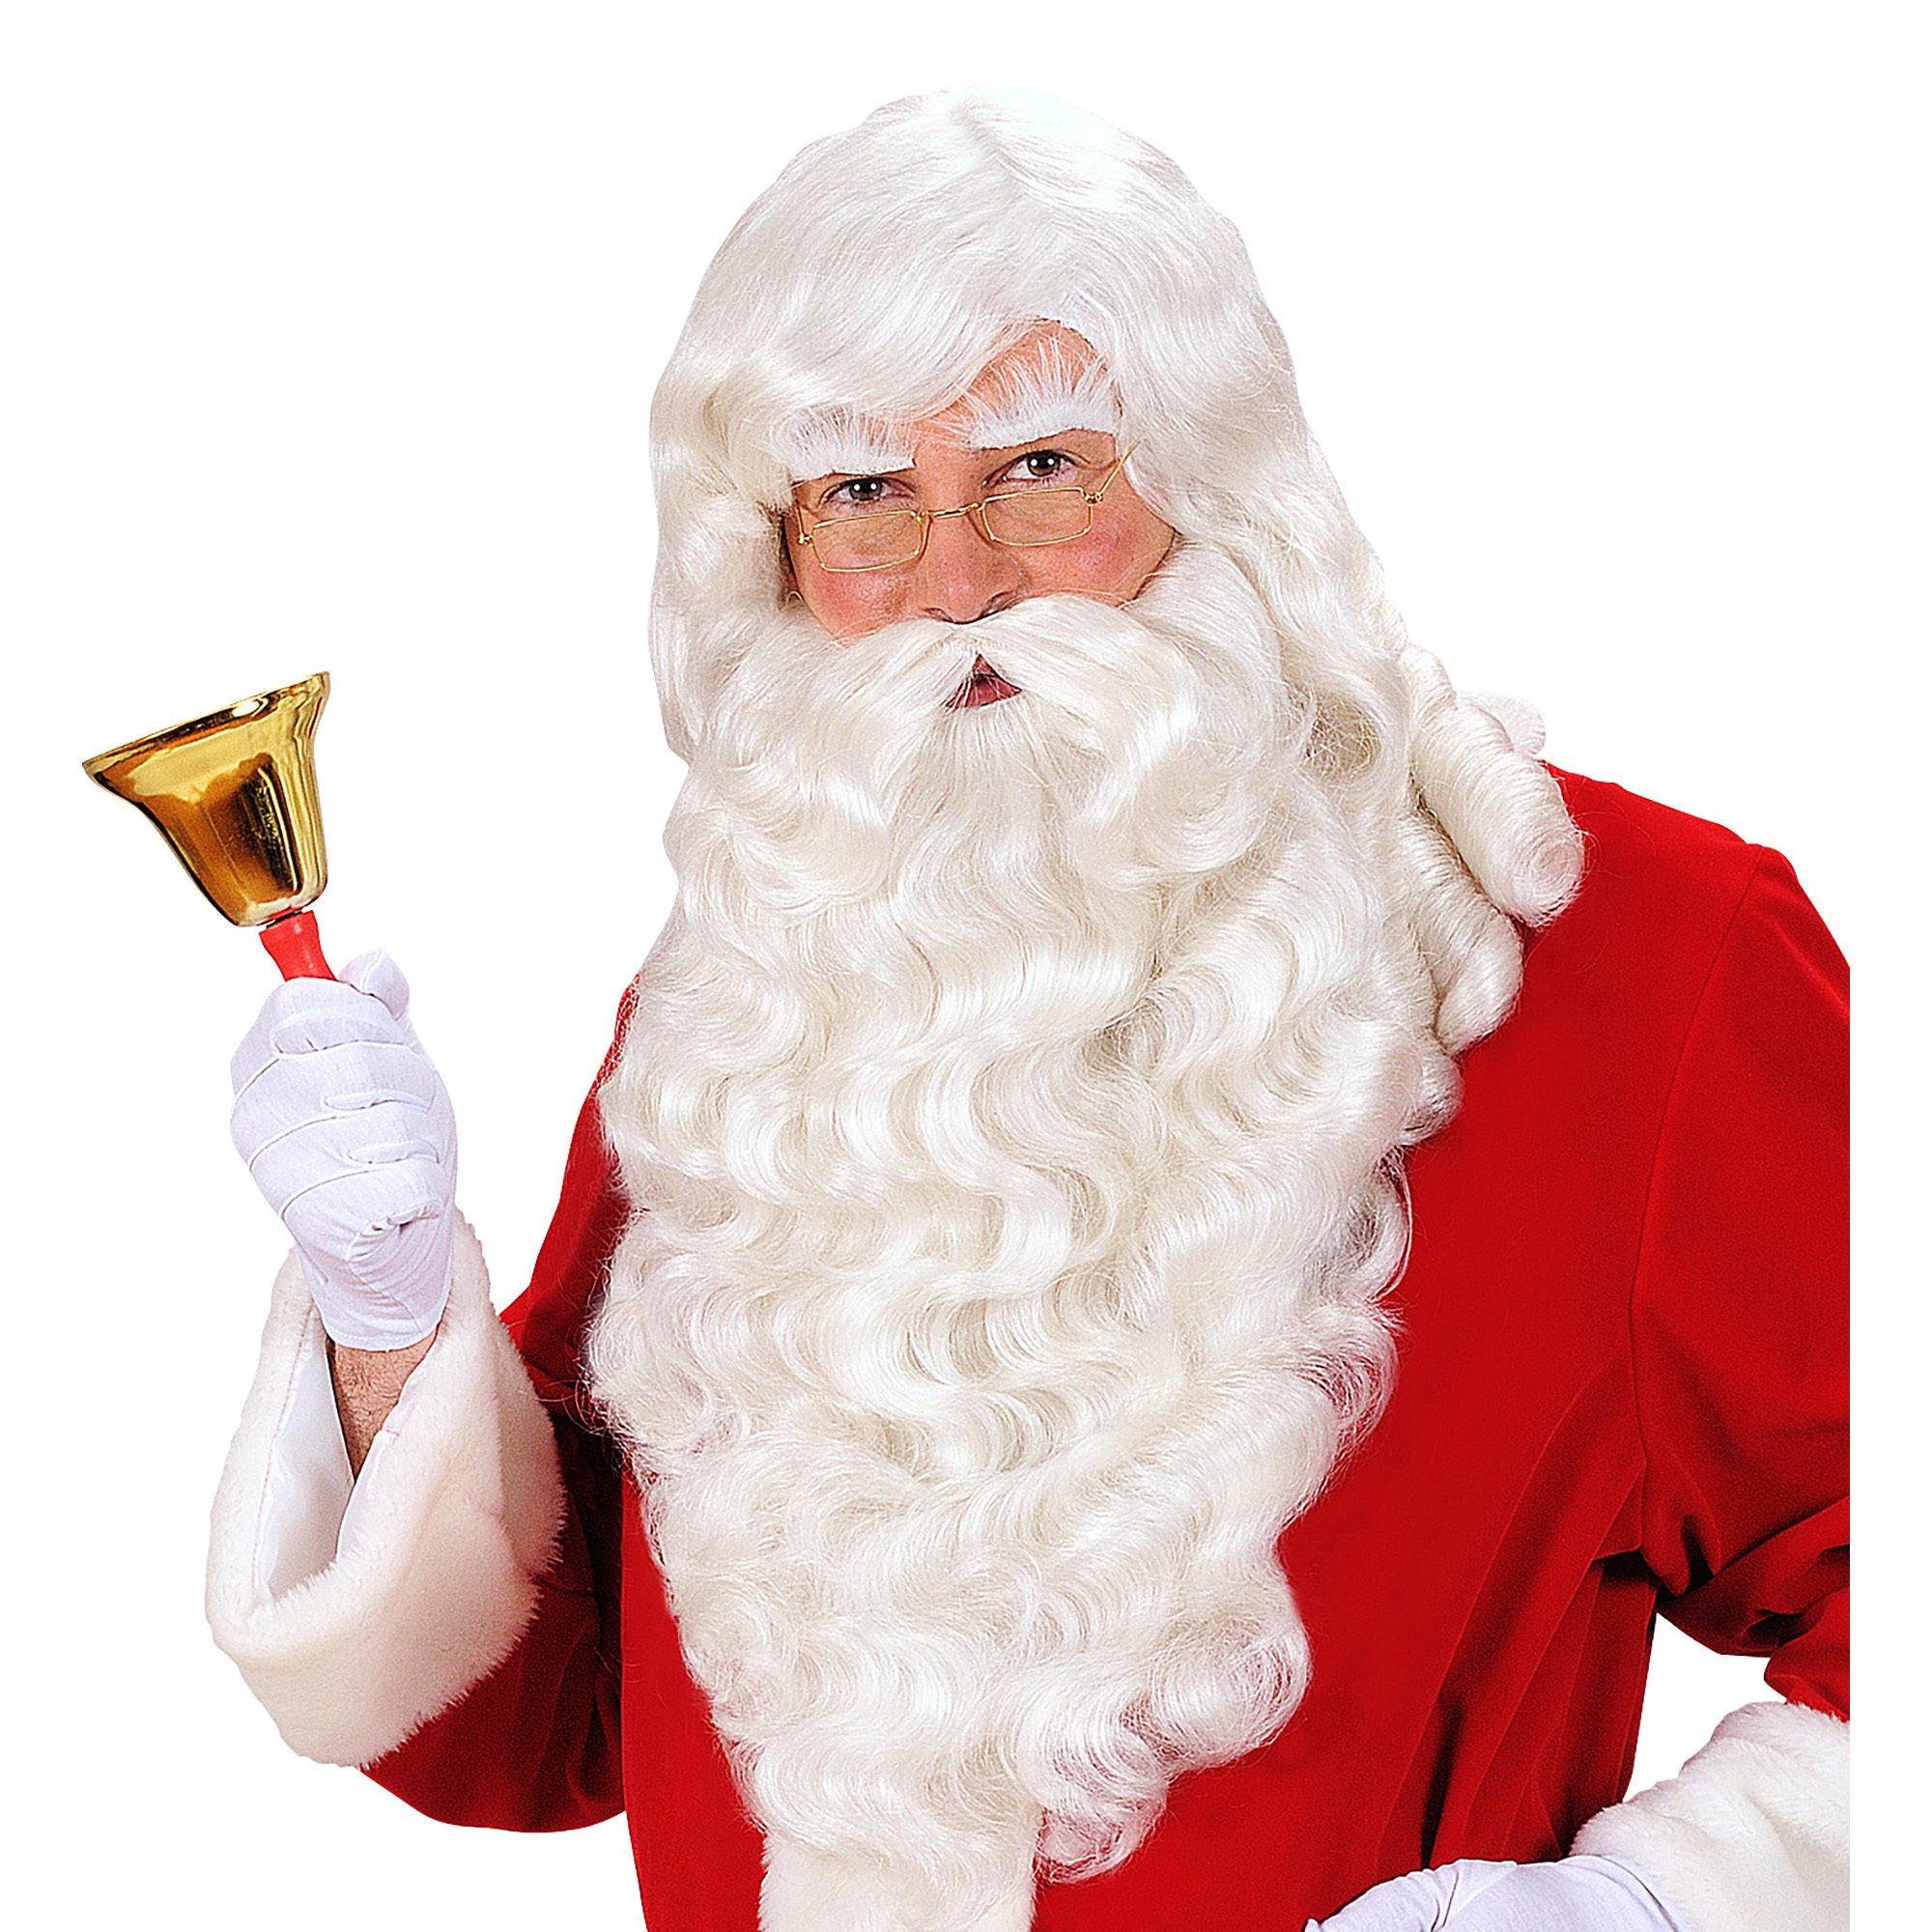 Witte pruik kerstman met baard snor wenkbrauwen luxe uitvoering